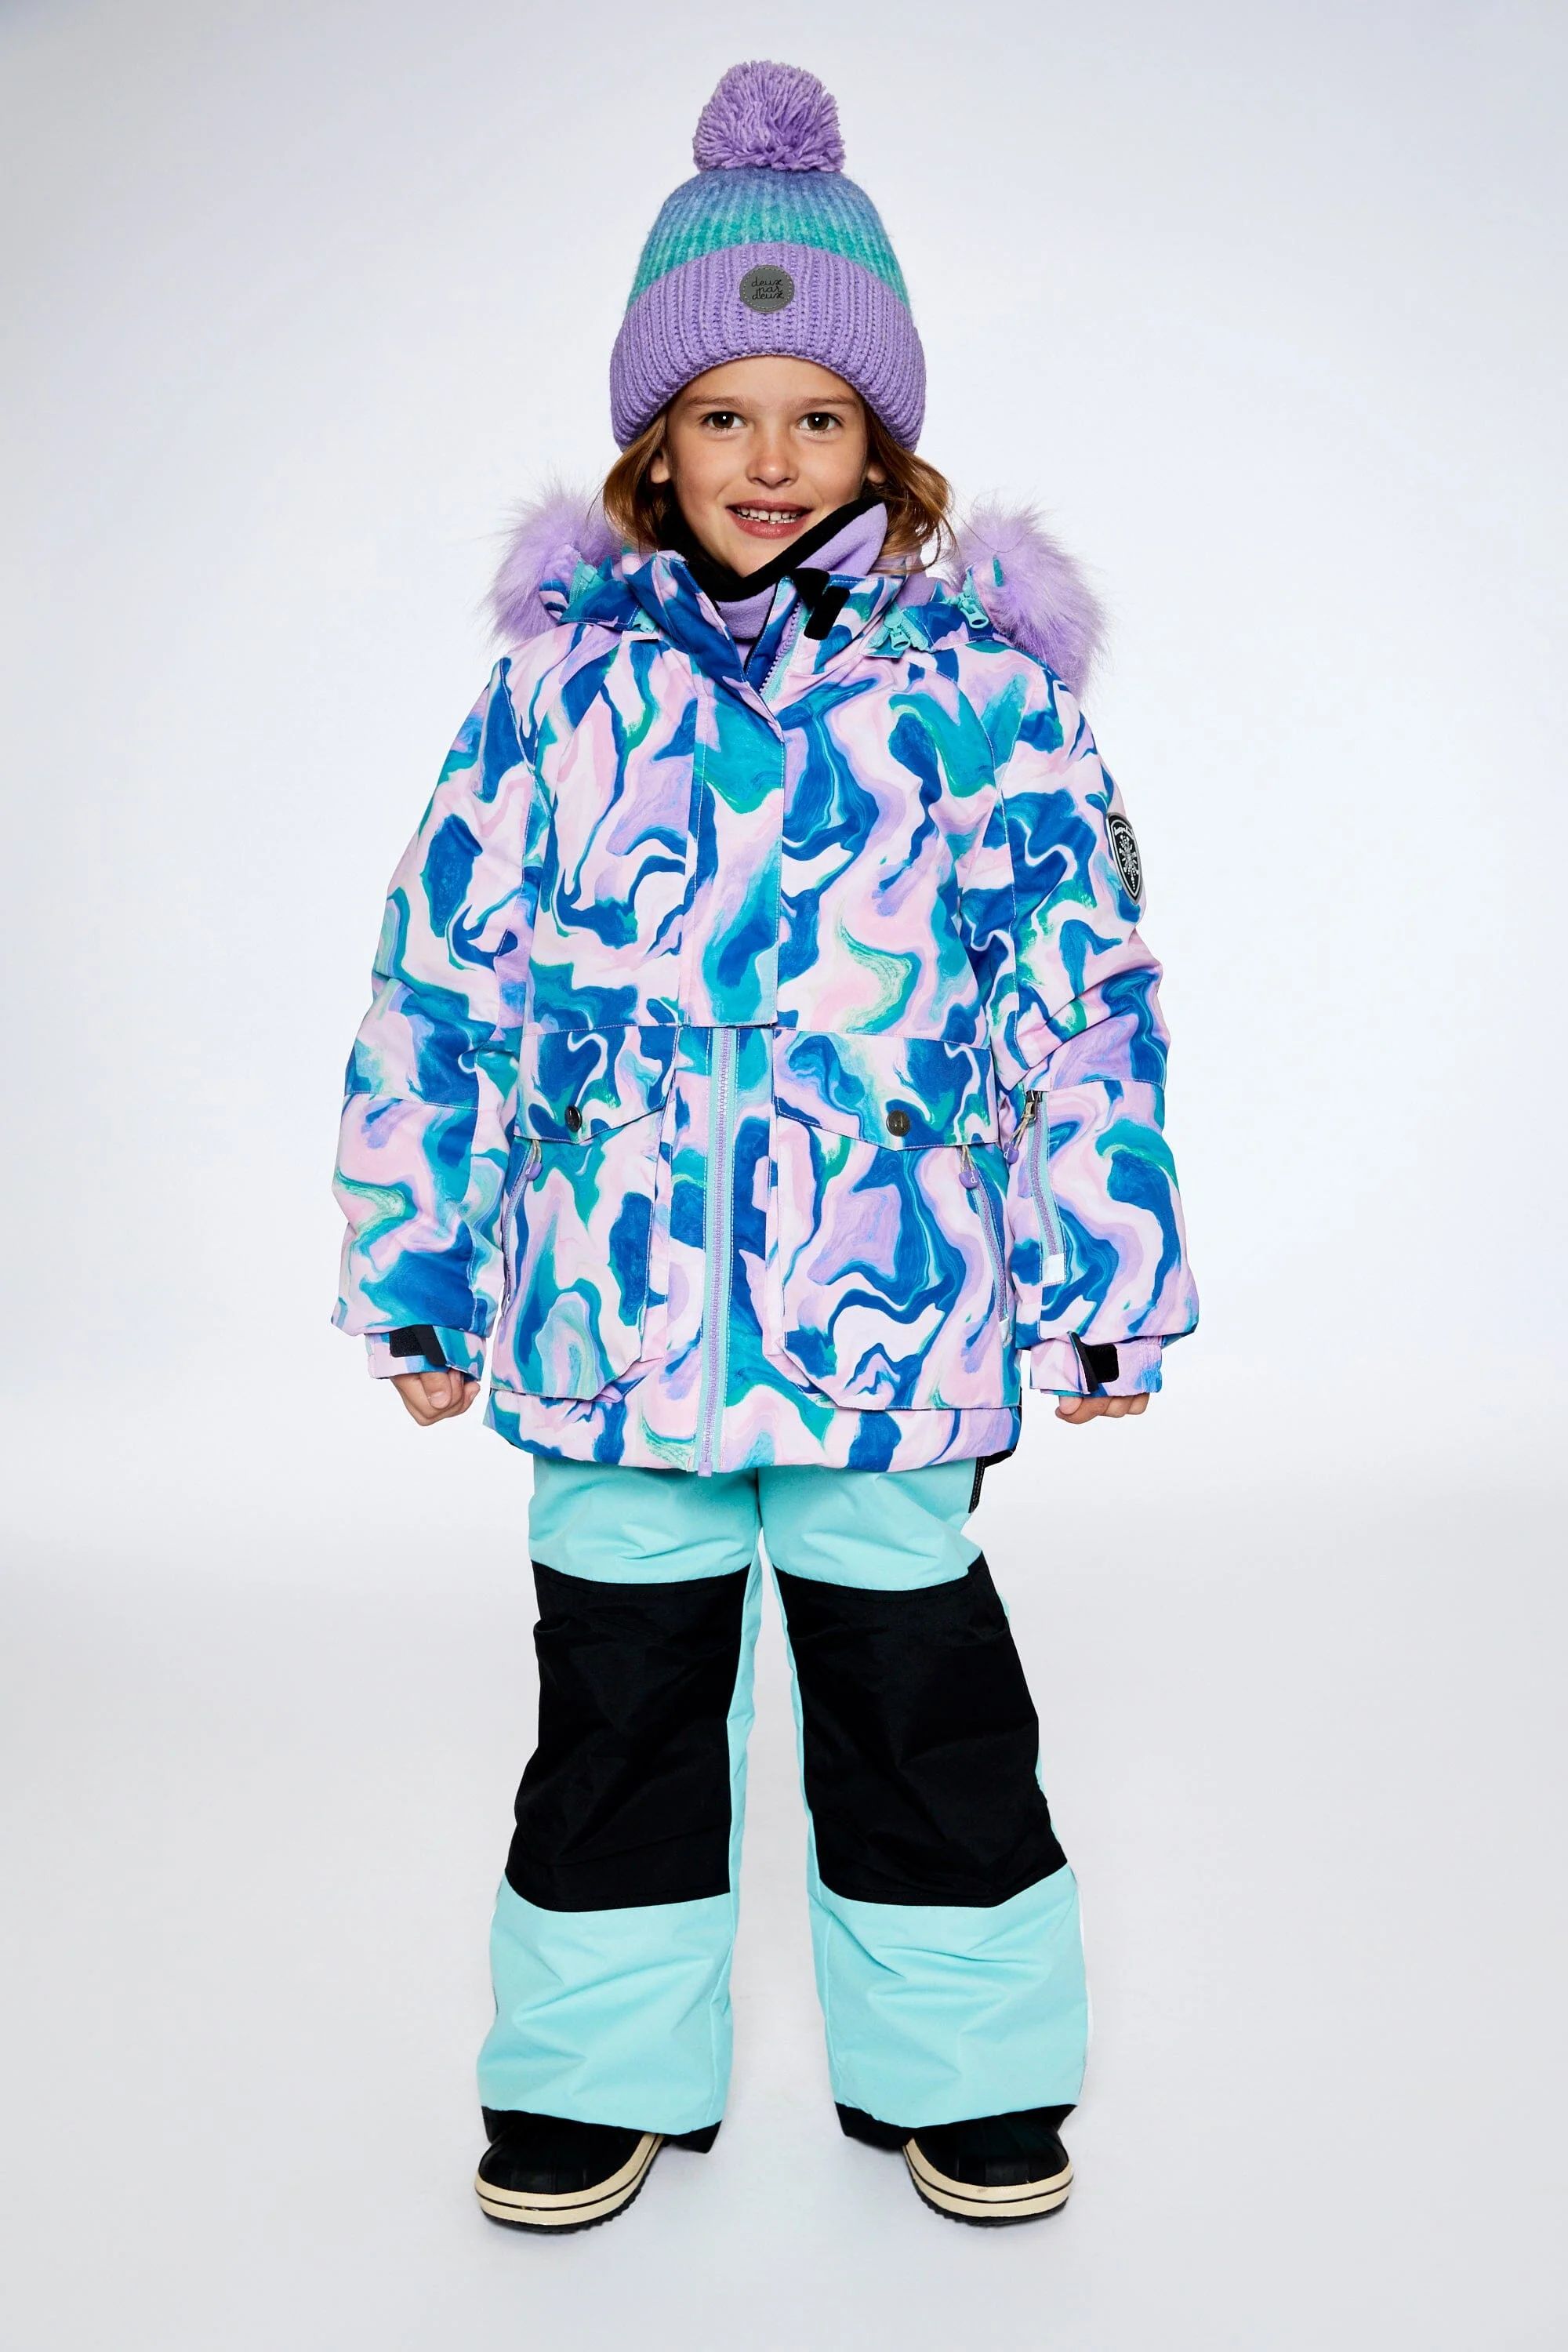 Two Piece Snowsuit In Aqua With Marbled Print | Deux par Deux Childrens Designer Clothing